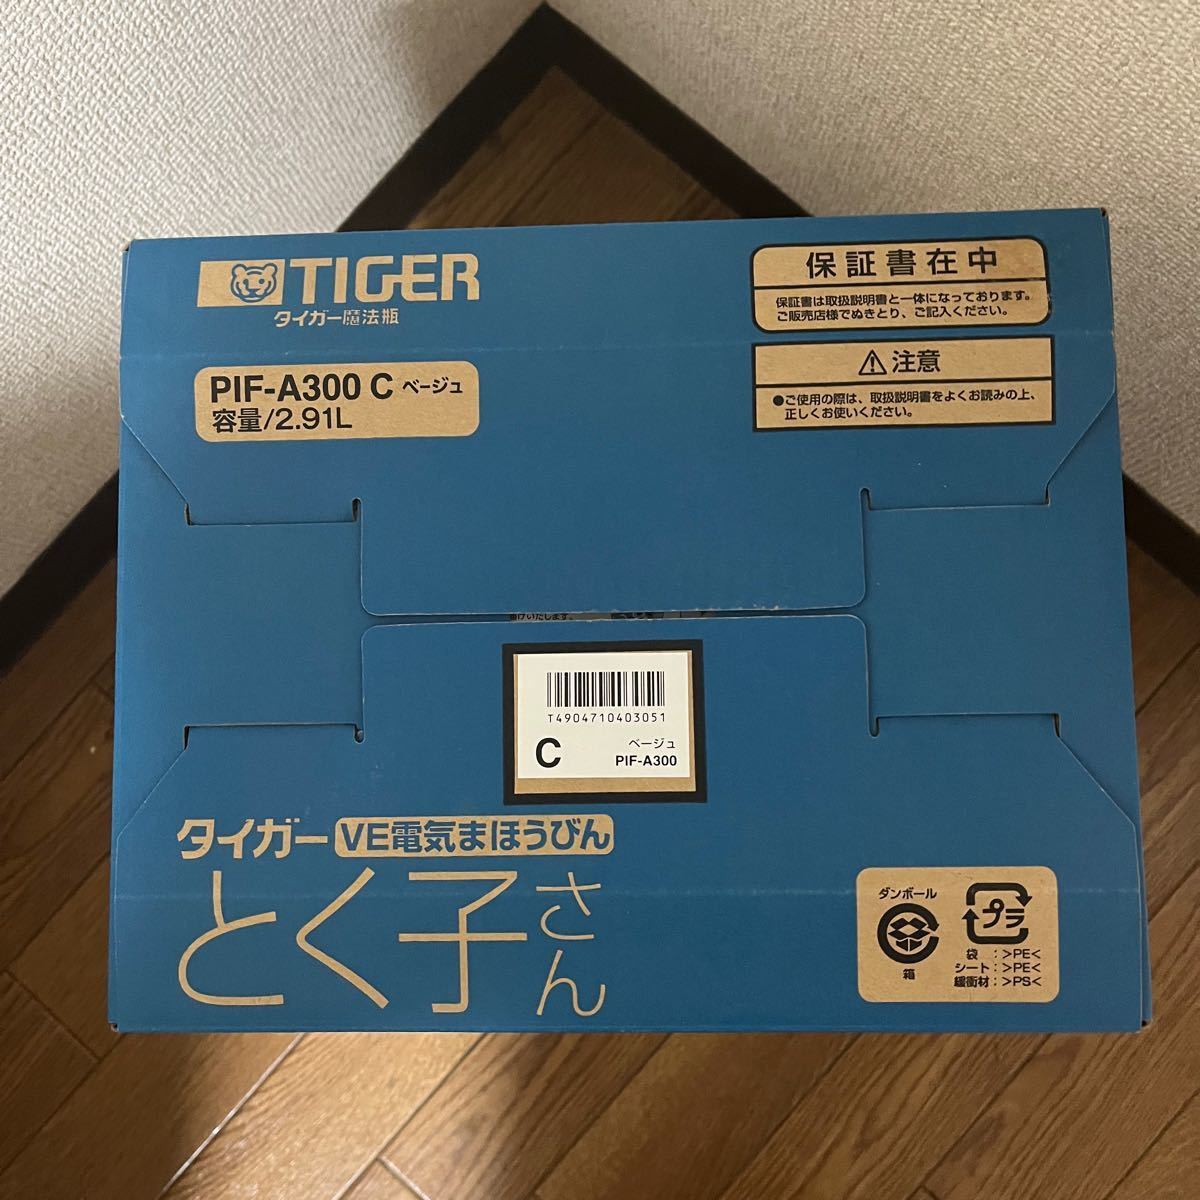 タイガー VE電気ポット 「とく子さん」 省エネコース付き 3L ベージュ PIF-A300-C